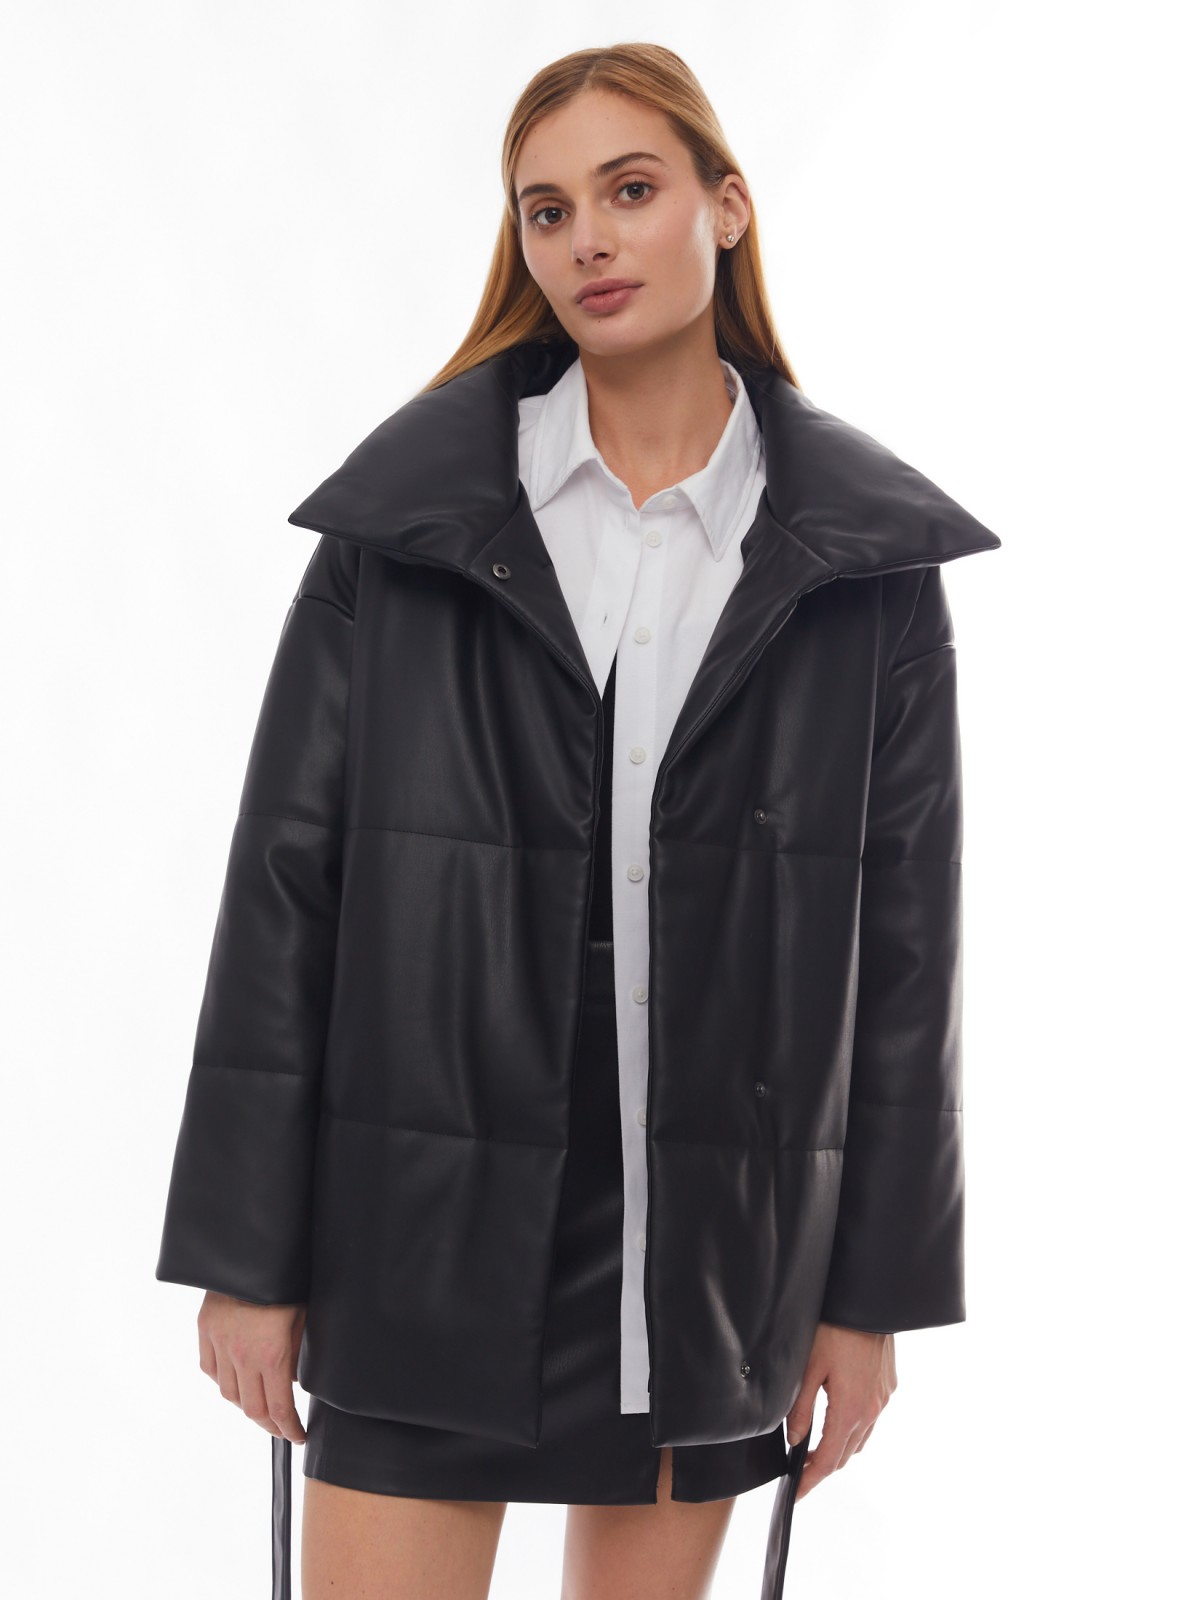 Тёплая дутая куртка из экокожи с высоким воротником и поясом zolla 02412512N104, цвет черный, размер XS